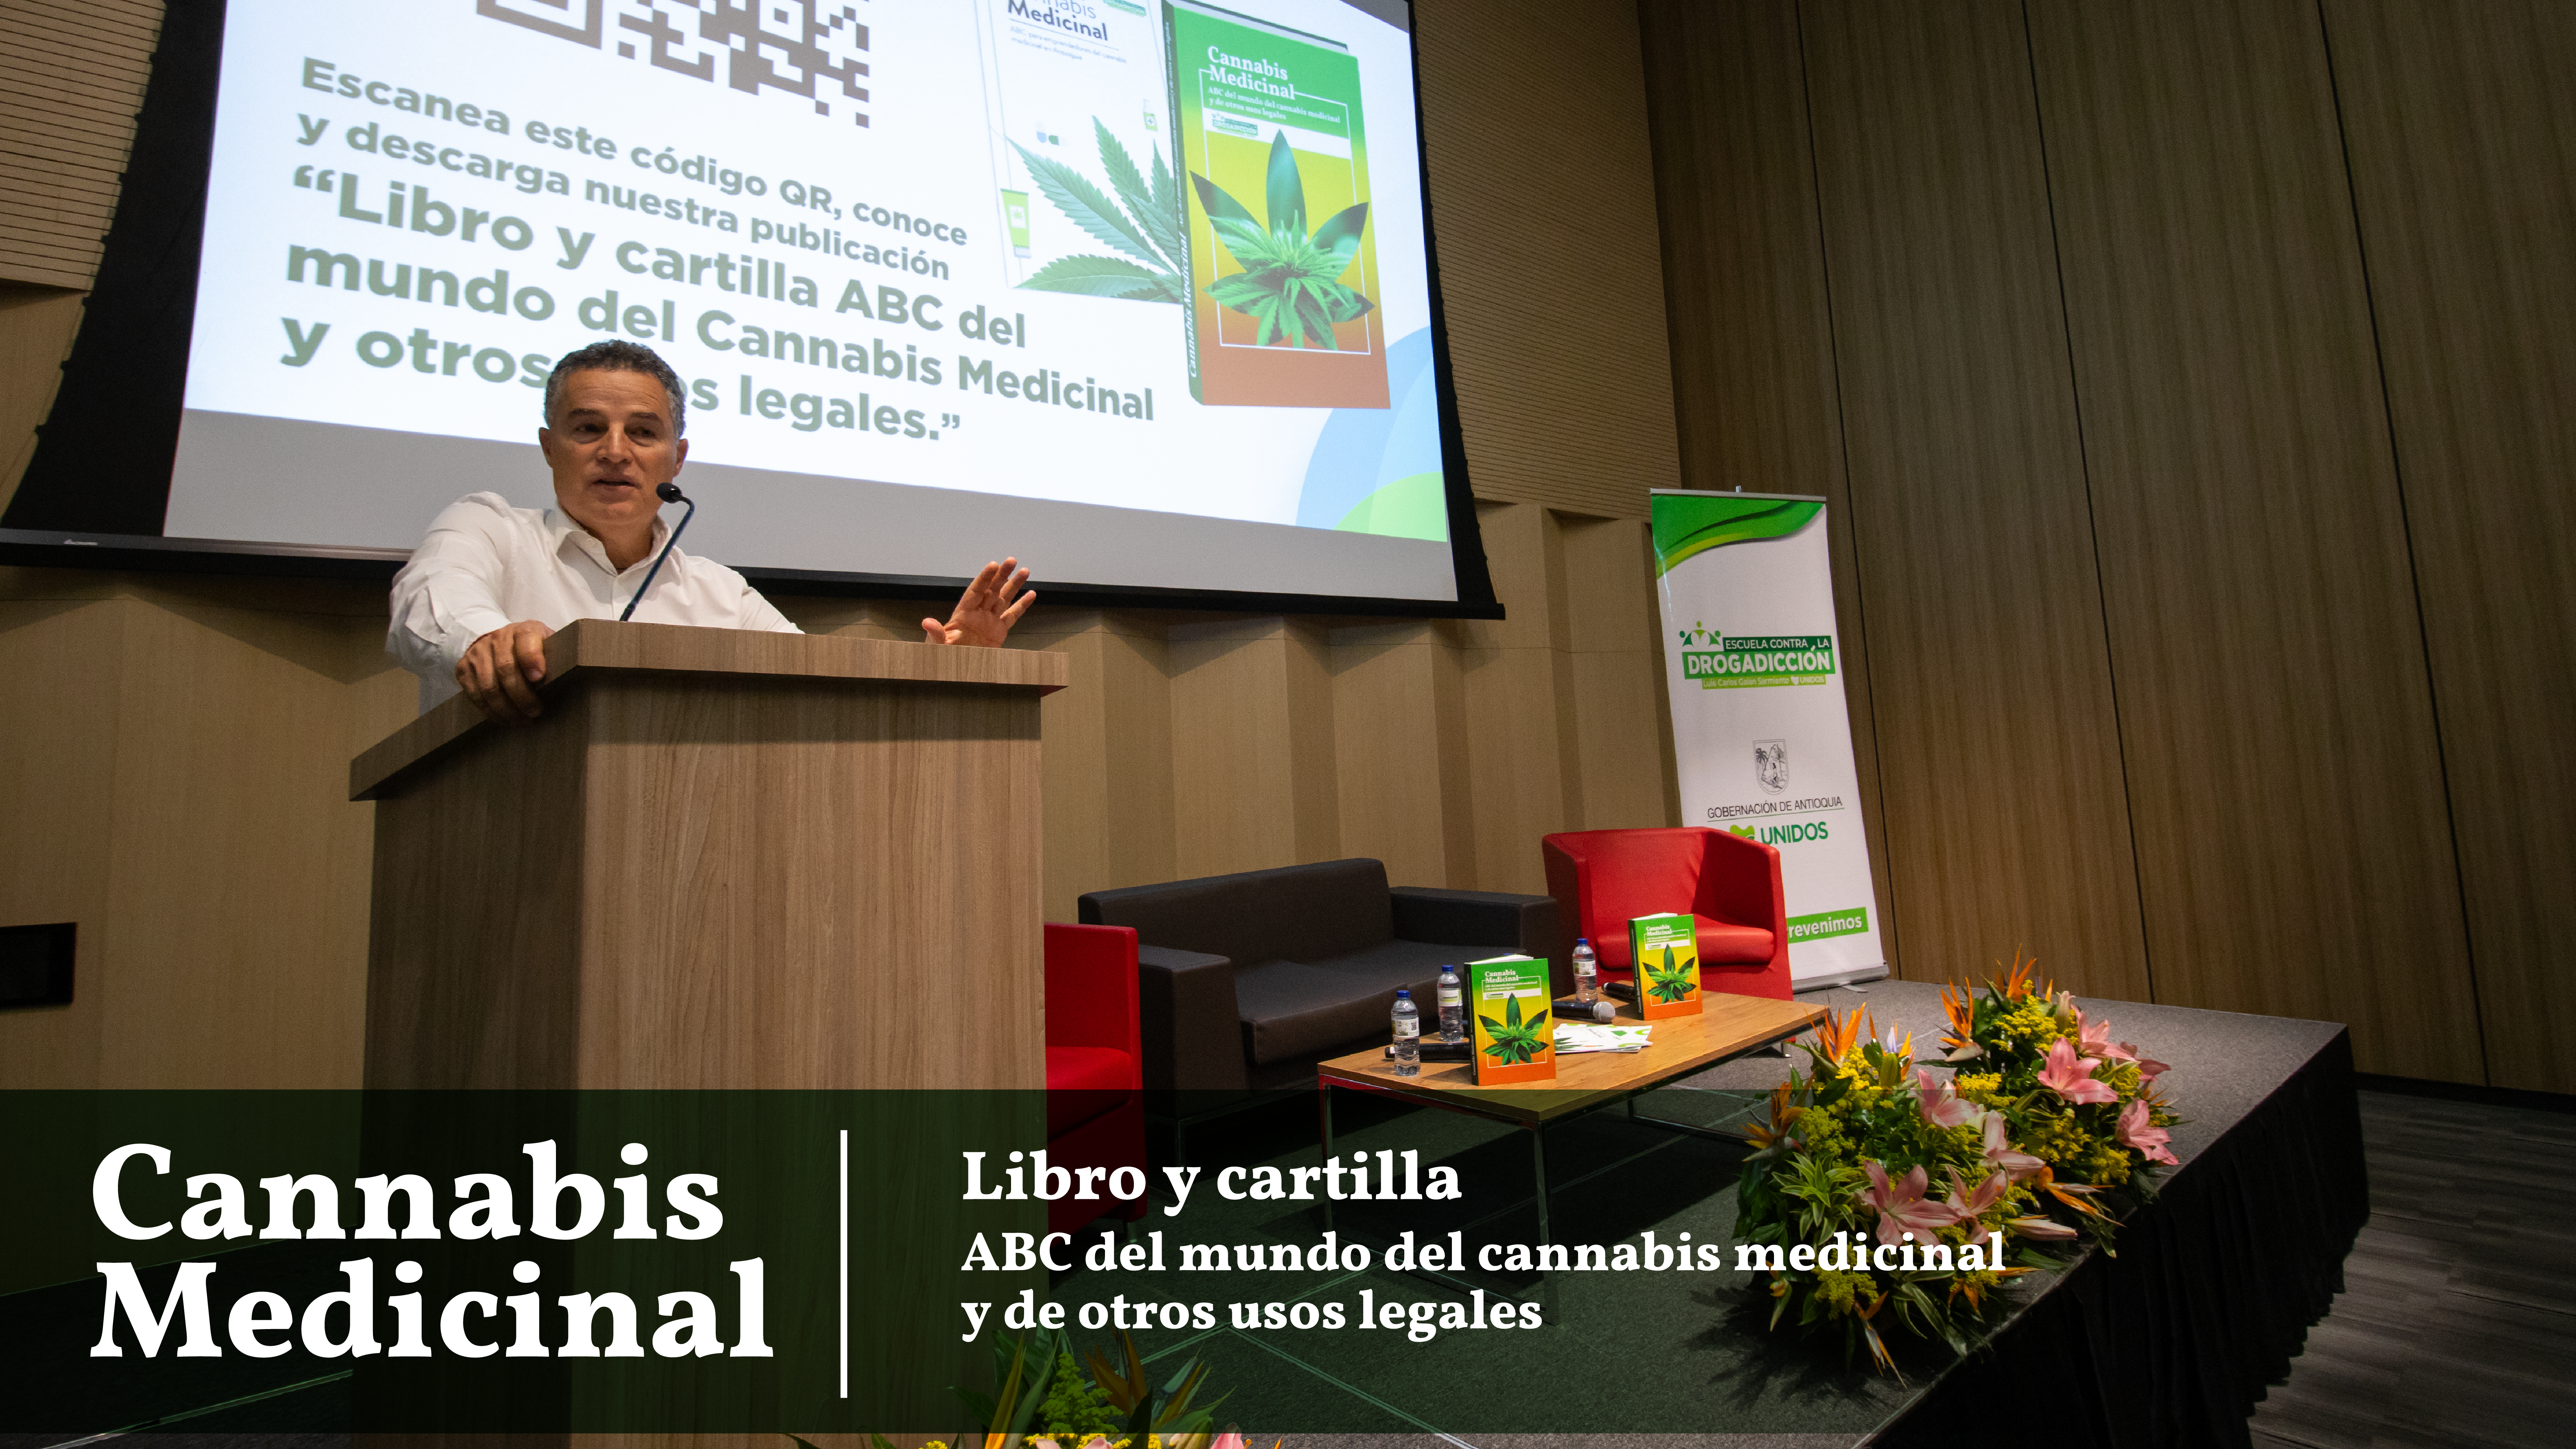 La Escuela Contra la Drogadicción realizó el lanzamiento del Libro Cannabis Medicinal “ABC del Cannabis Medicinal y otros usos legales” en las ciudades de Bogotá y Medellín.